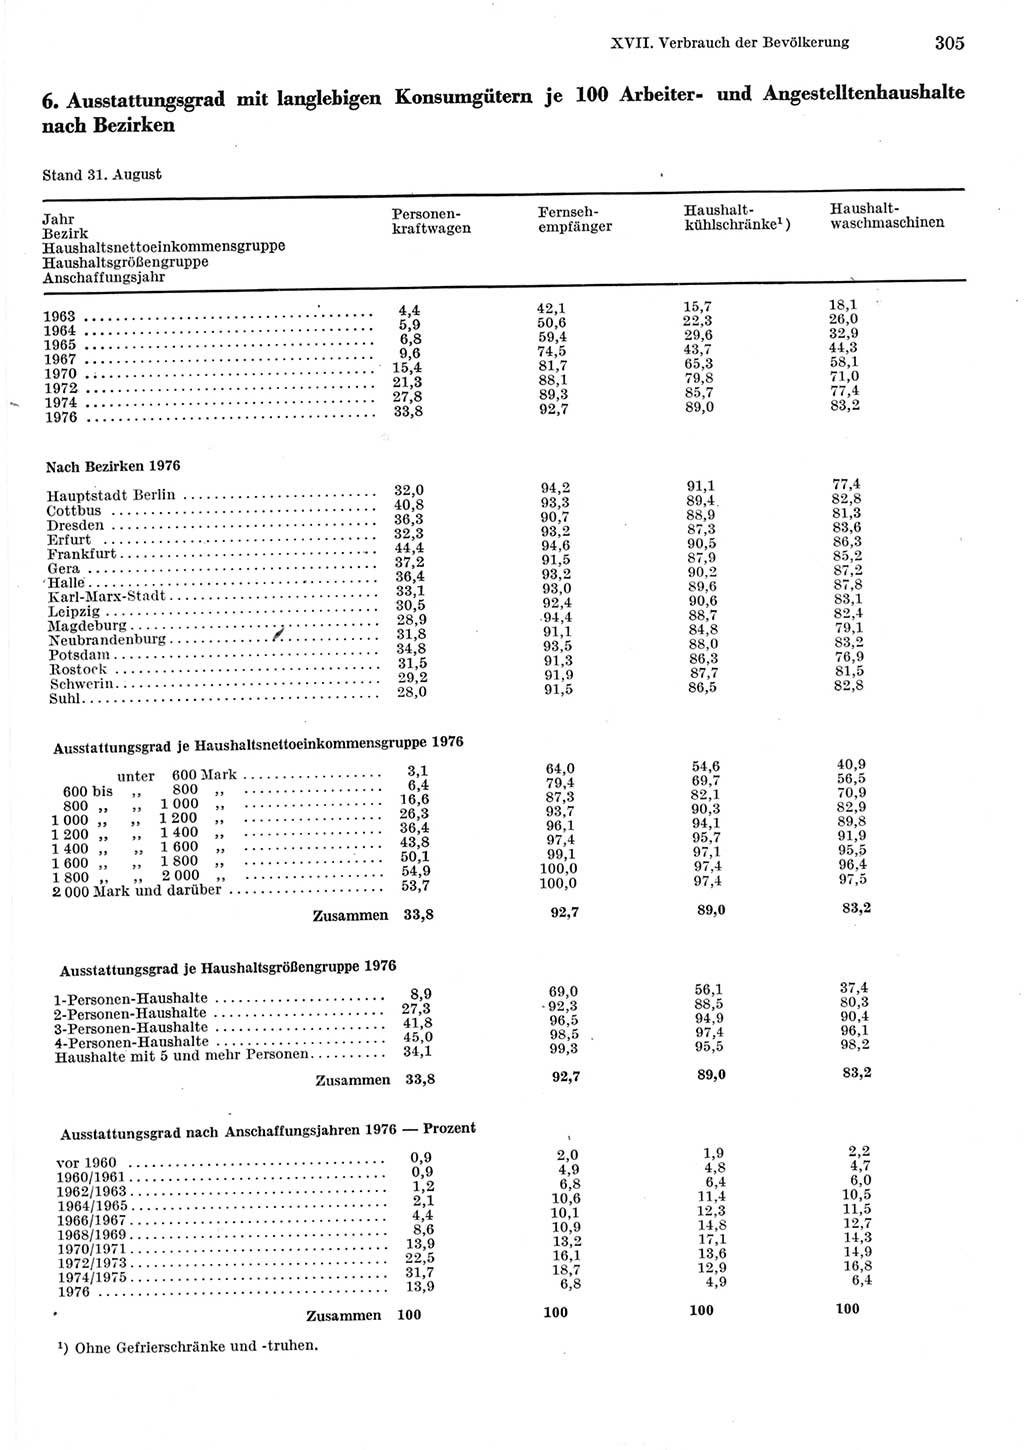 Statistisches Jahrbuch der Deutschen Demokratischen Republik (DDR) 1977, Seite 305 (Stat. Jb. DDR 1977, S. 305)